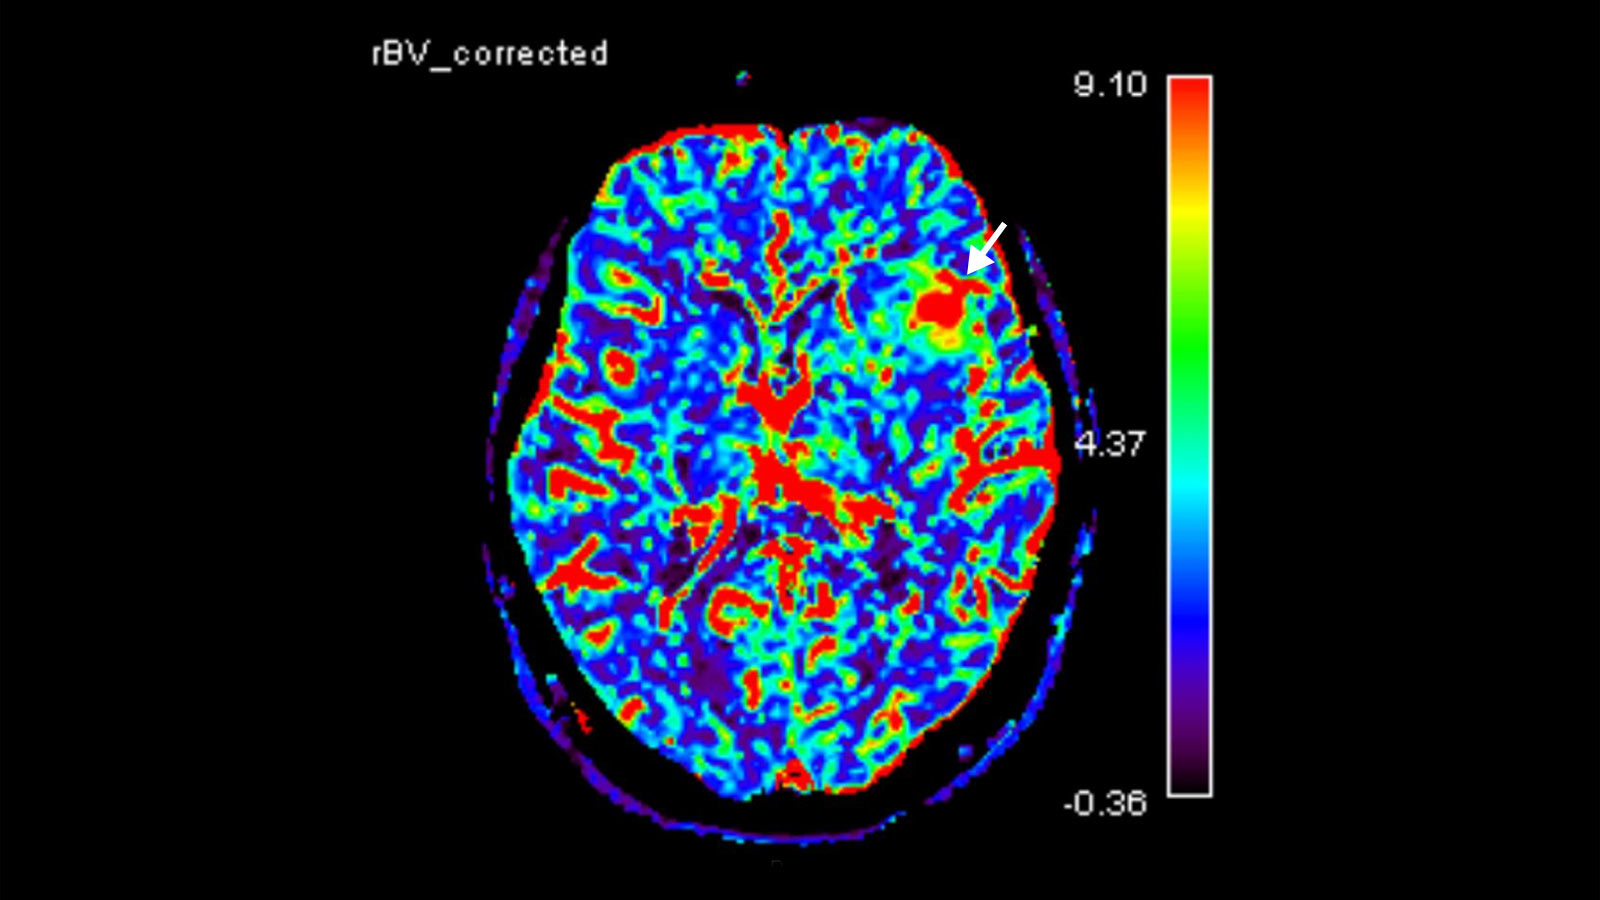 MRI mit Perfusionssquenz zeigt den Blutfluss des Gehirns in Farben. Ein Pfeil zeigt auf den Tumor. Dort ist farbig ein erhöhtes Blutvolumen zu erkennen.